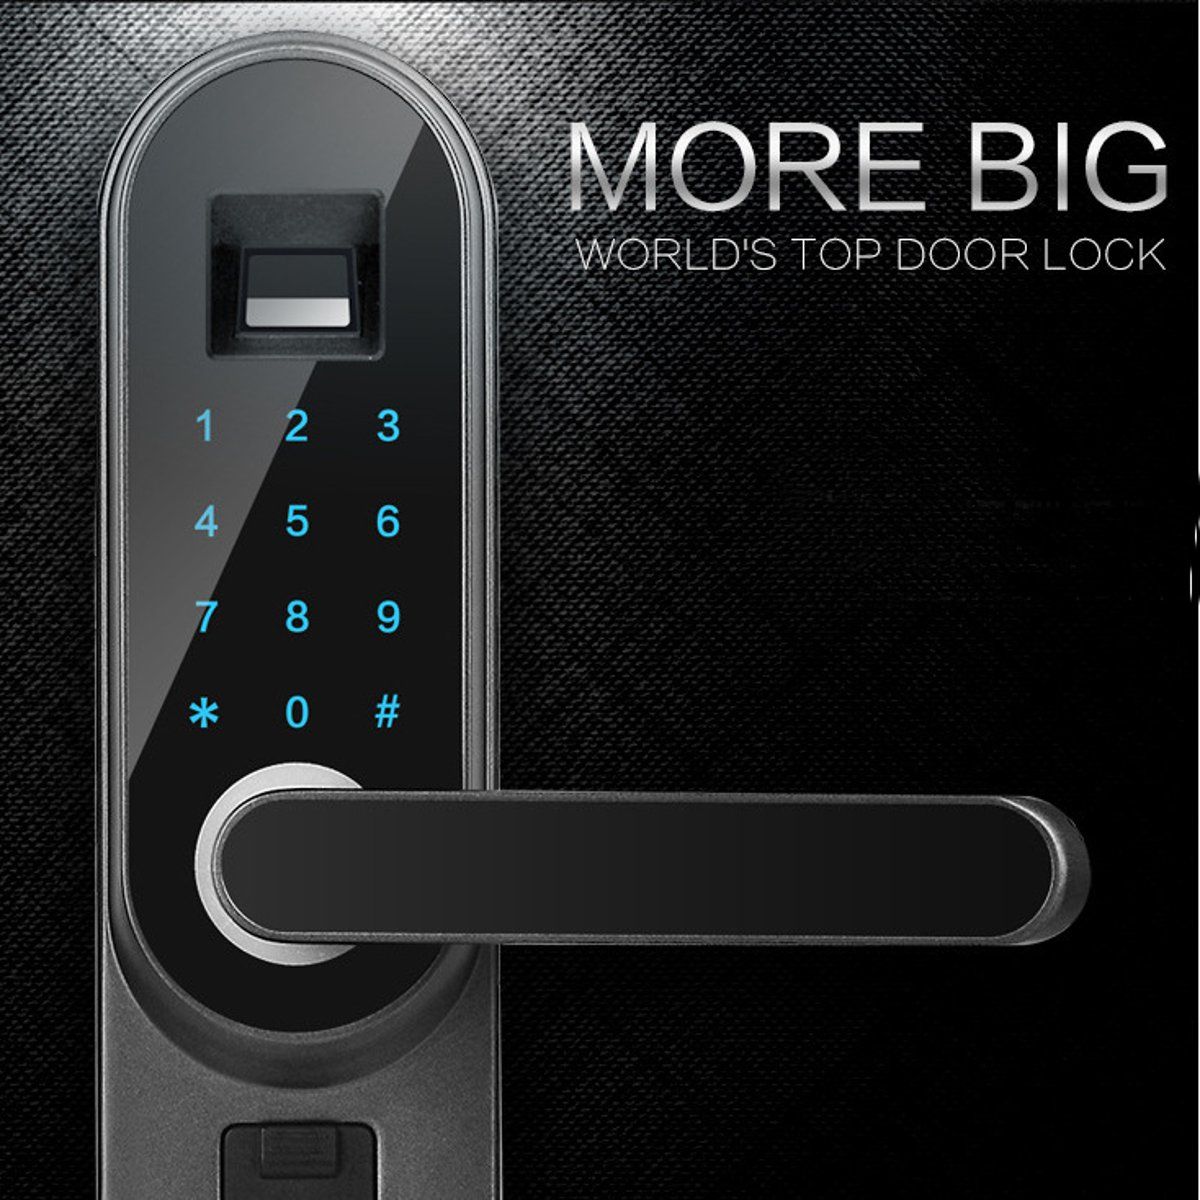 Universal-Digital-Smart-Door-Lock-Password-Fingerprint-Anti-theft-Security-1288192